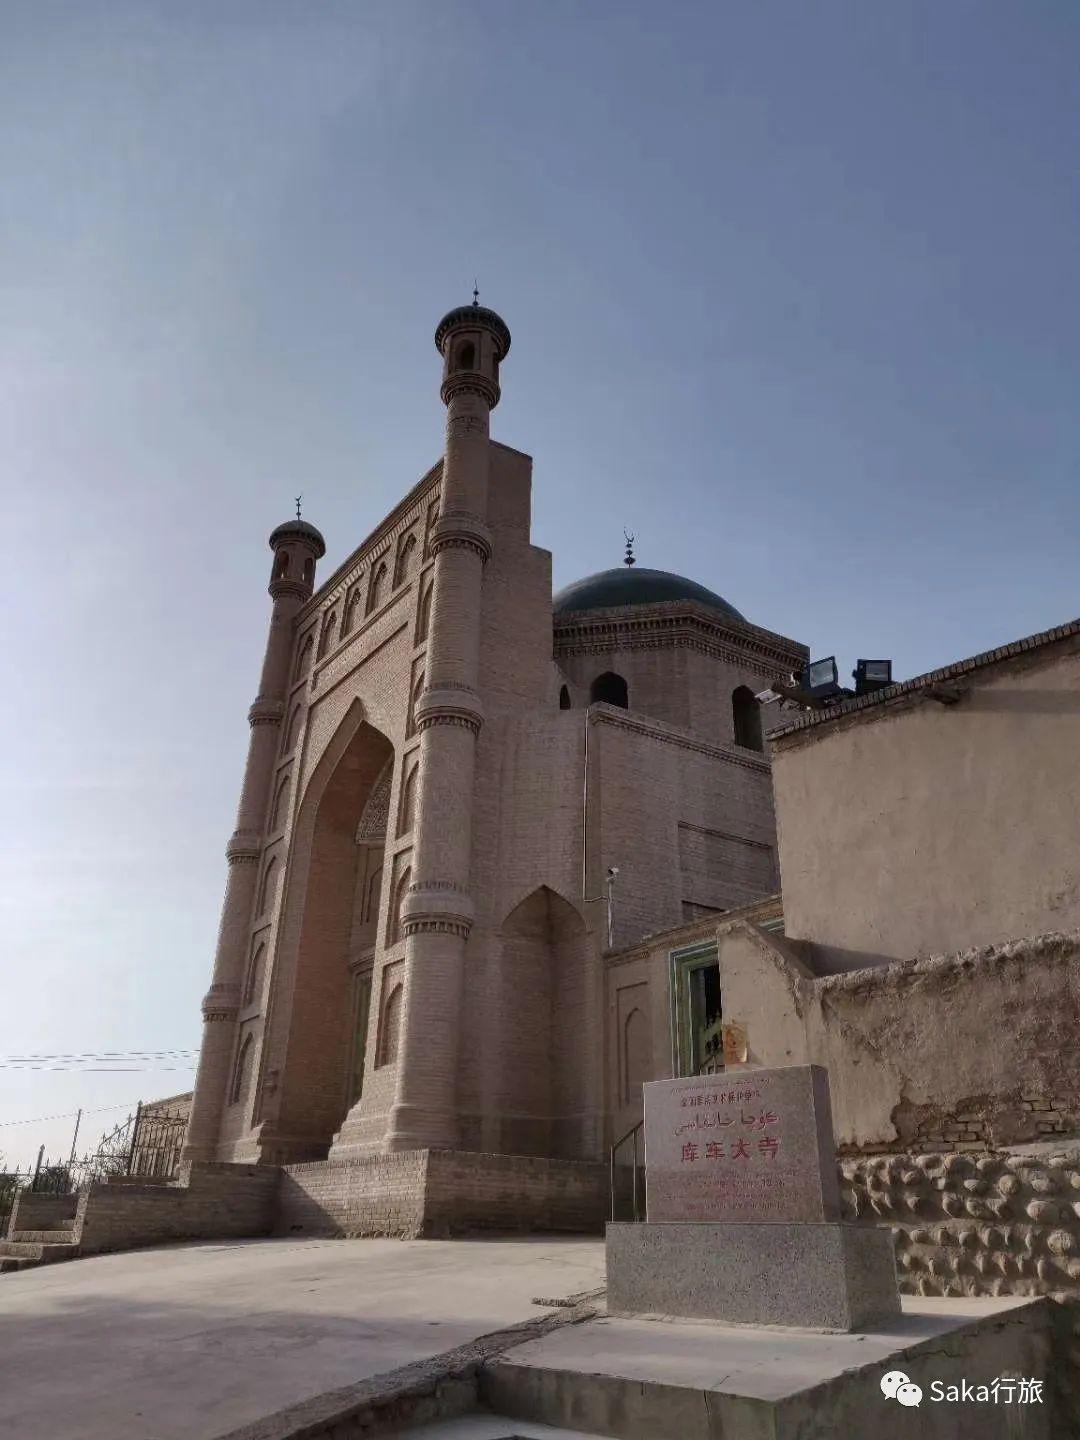 伊斯兰建筑基础上融合了新疆本地建筑文化传统而创造出的一种混合风格